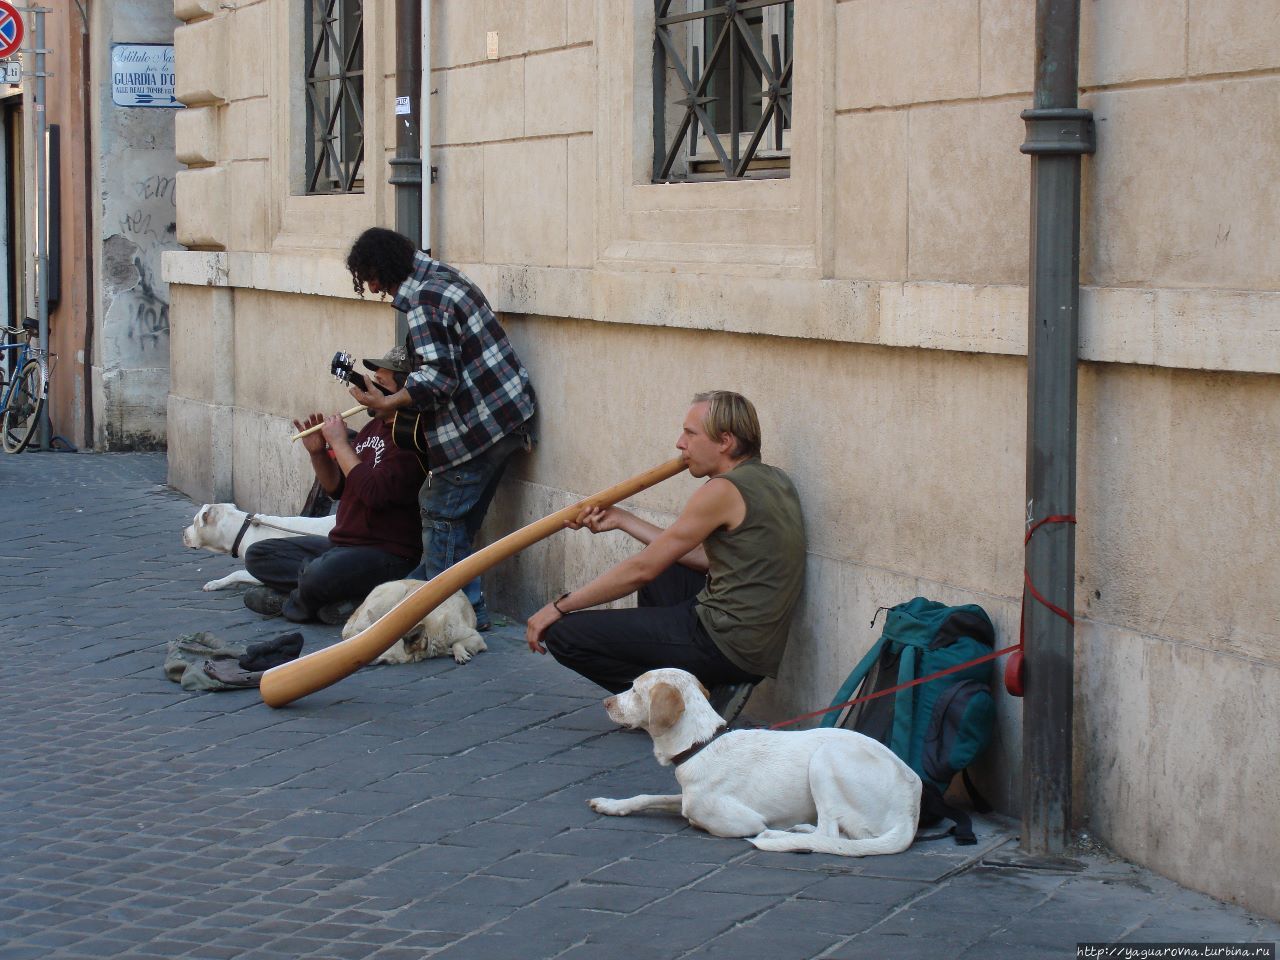 Как мы орлов снимали. Из Чивитавеккьи в Рим. Рим, Италия